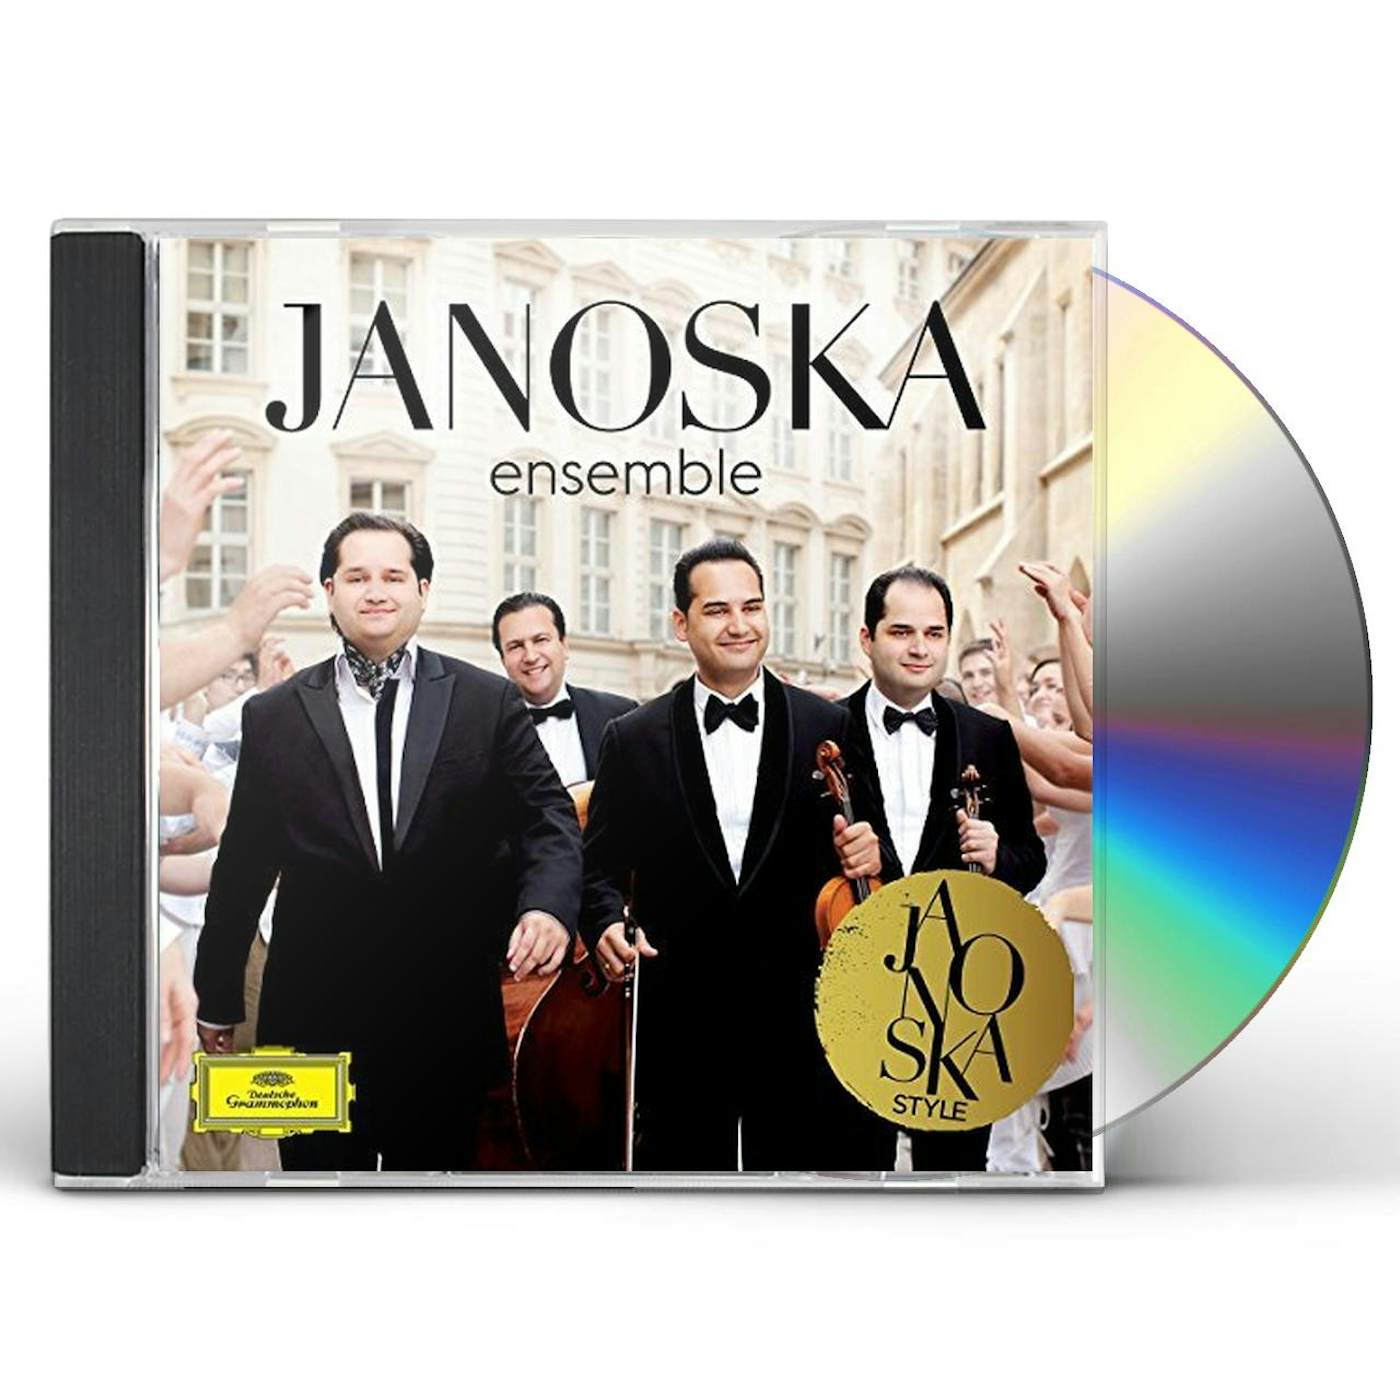 Janoska Ensemble JANOSKA STYLE CD